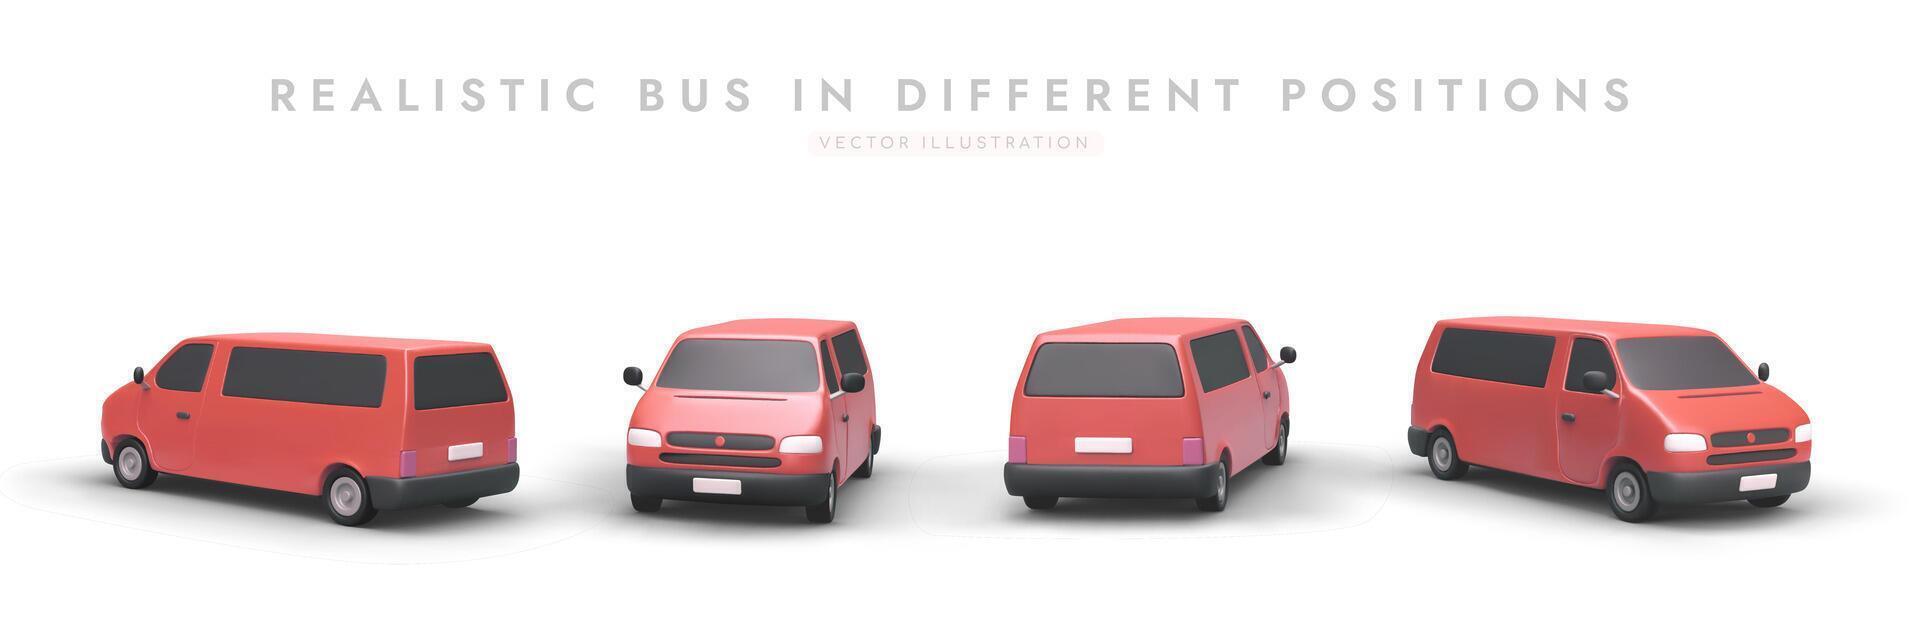 realistisk mini buss från annorlunda vinklar. röd 3d minibuss med skuggor vektor